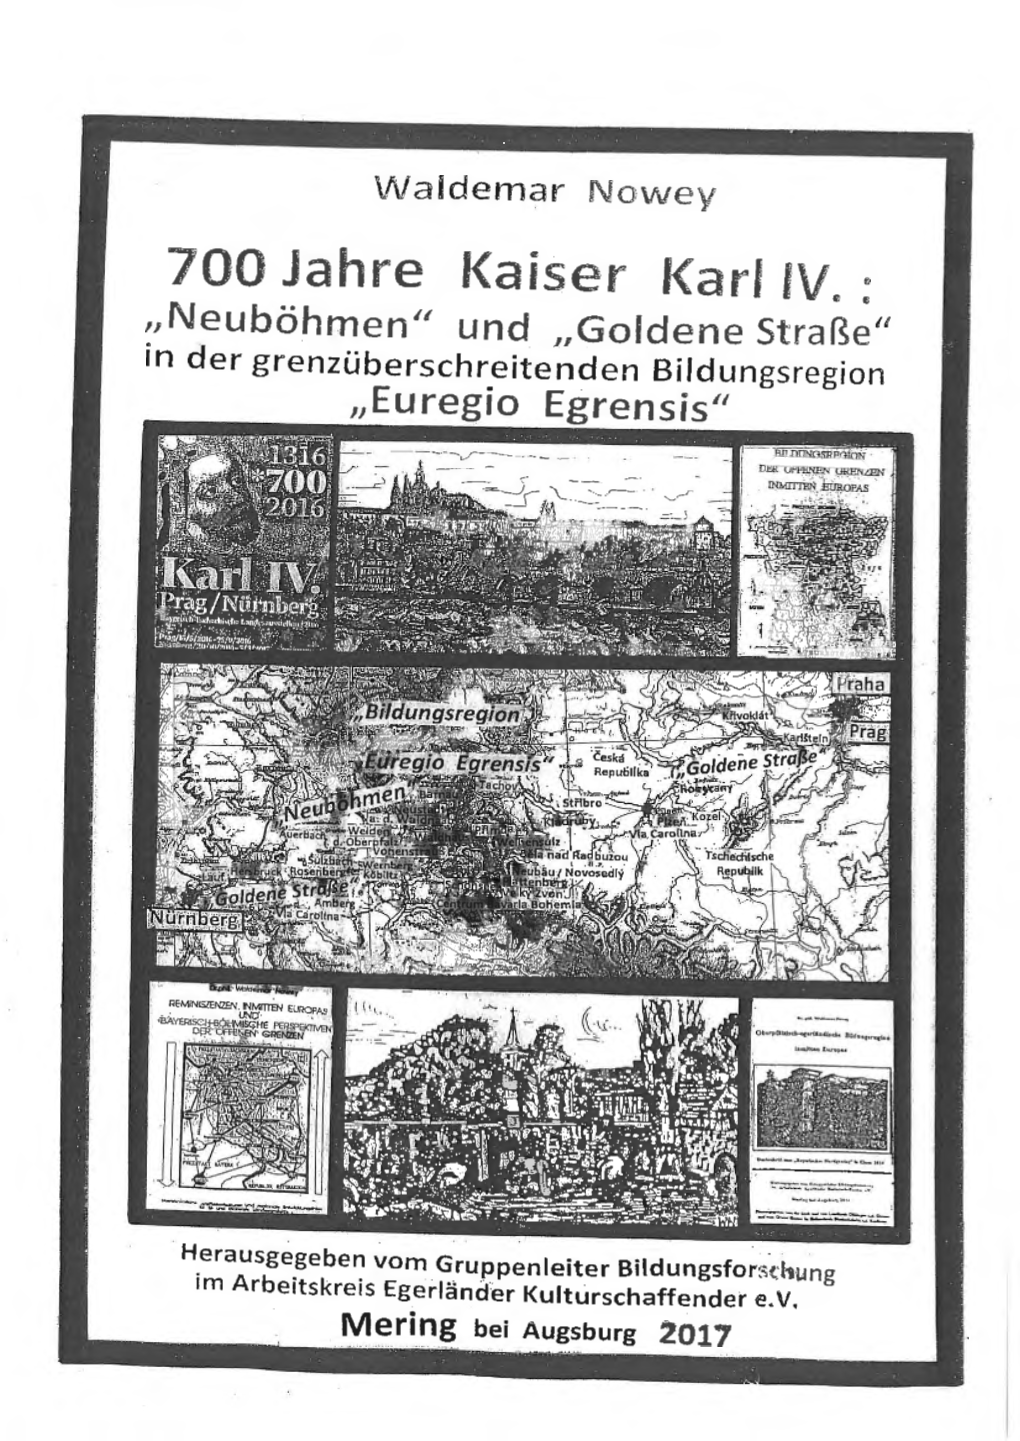 700 Jahre Kaiser Karl IV